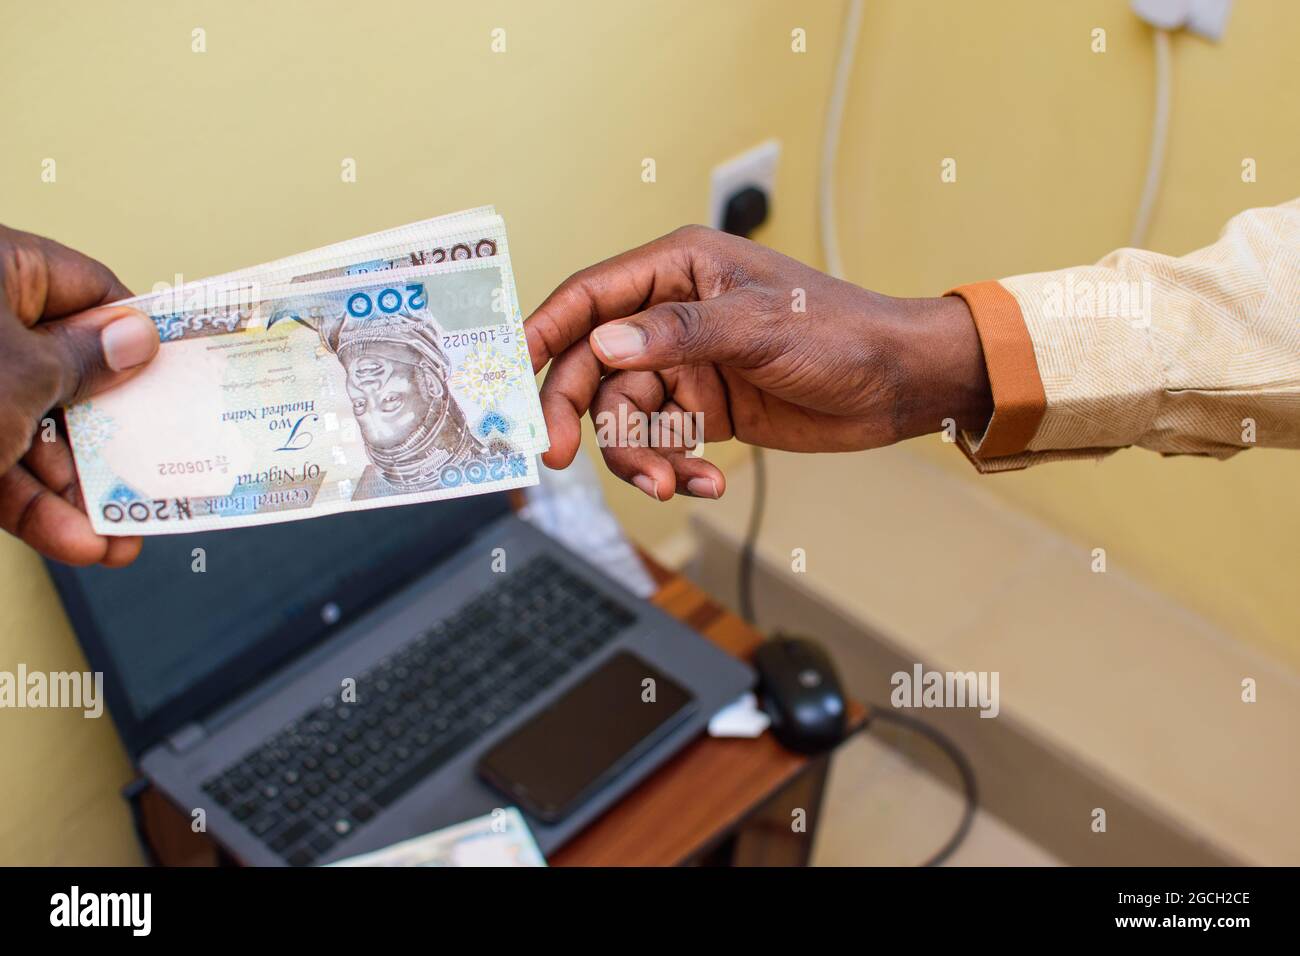 Une main africaine recevant des billets, de l'argent ou de la monnaie nigérians Naira avec un ordinateur portable en arrière-plan Banque D'Images